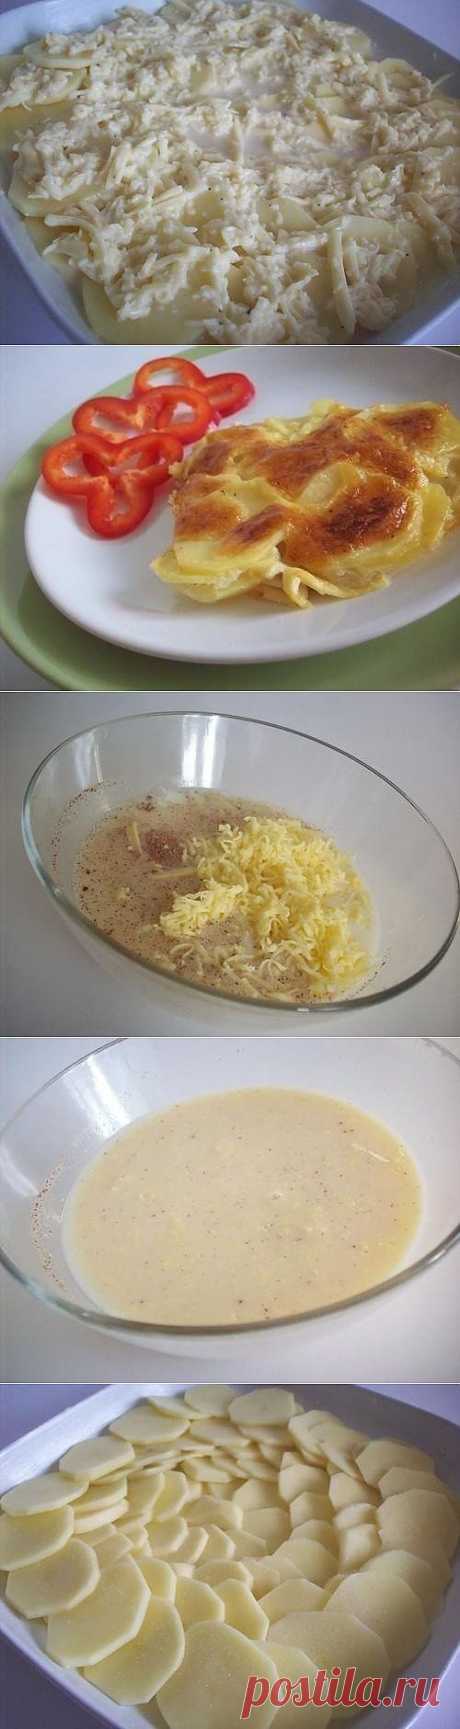 Запеченный под сыром картофель «Дофине» - рецепт и способ приготовления, ингридиенты | sloosh